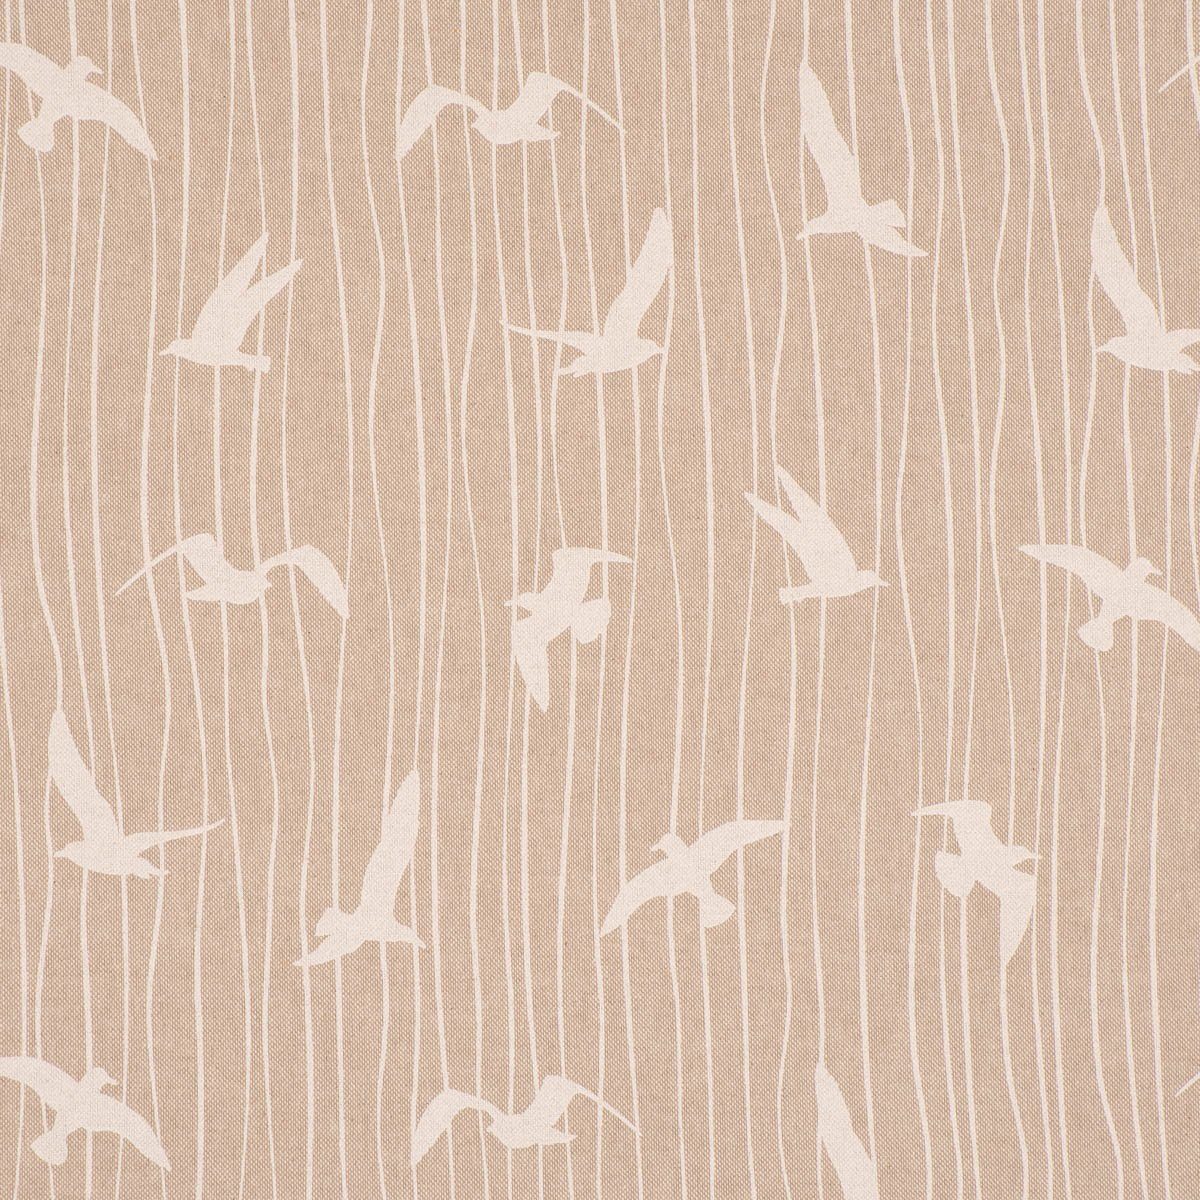 Iconic SCHÖNER Vorhang (1 St), handmade, Germany, wei, natur Vorhang Seagull in LEBEN. LEBEN., Stripe Smokband blickdicht, made Möwen SCHÖNER Streifen Baumwolle, vorgewaschen